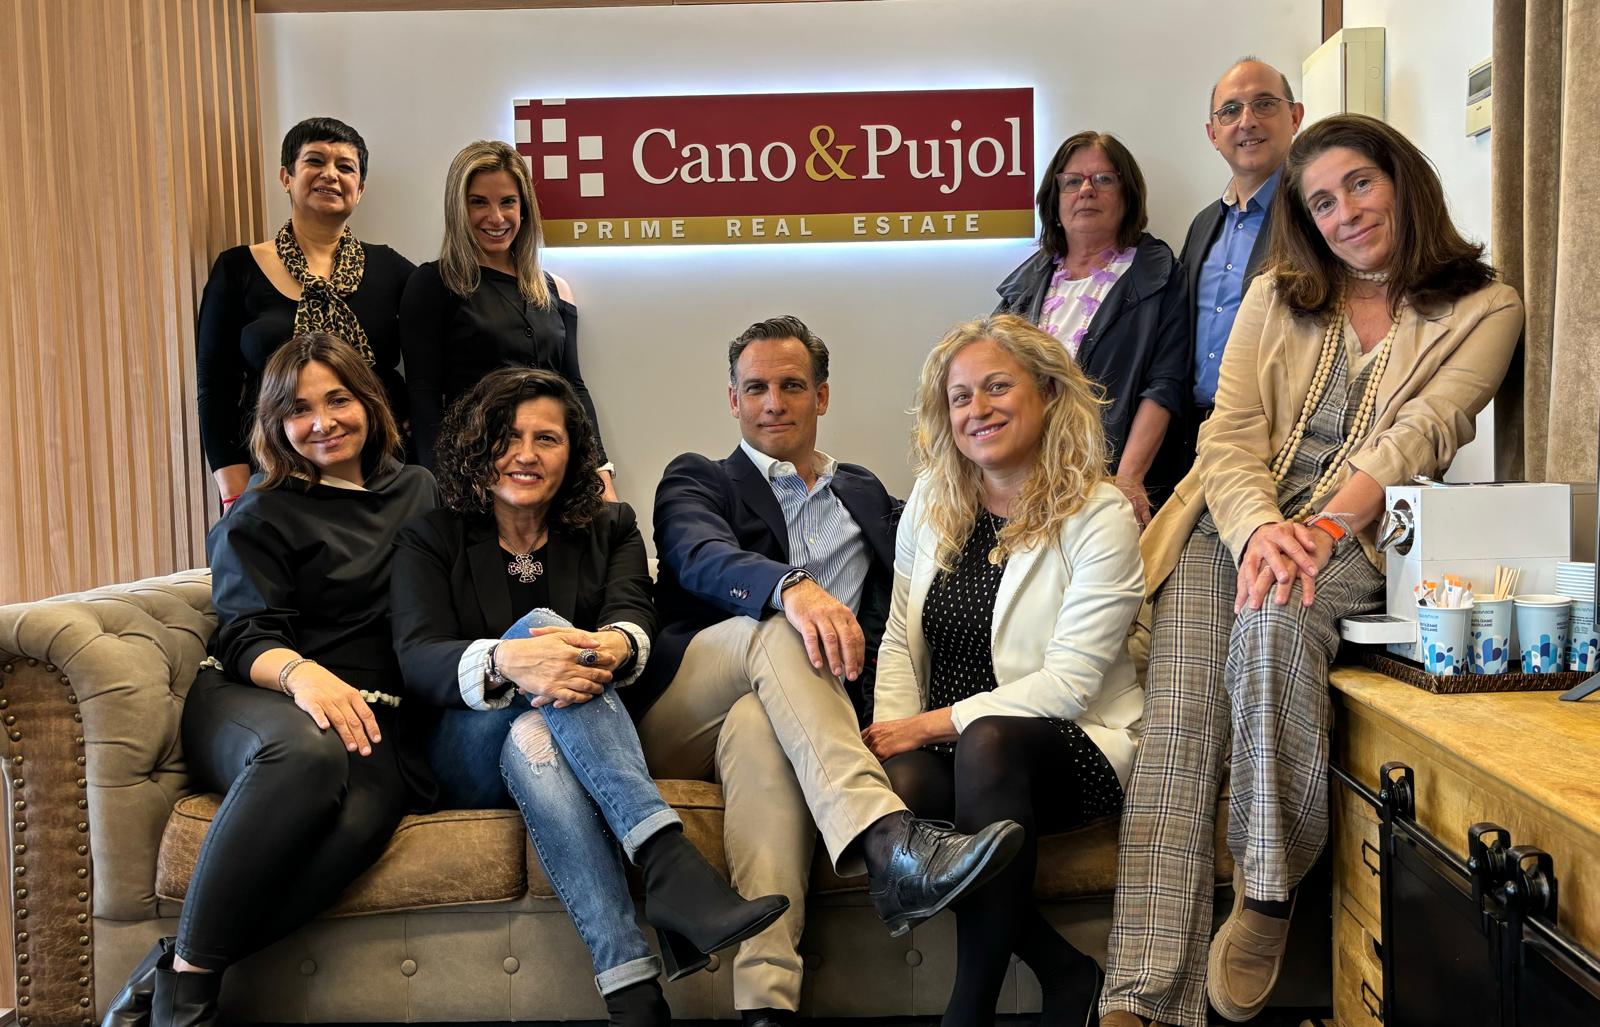 Equip de Cano & Pujol Prime Real Estate amb seu a Sant Cugat. FOTO: Cedida